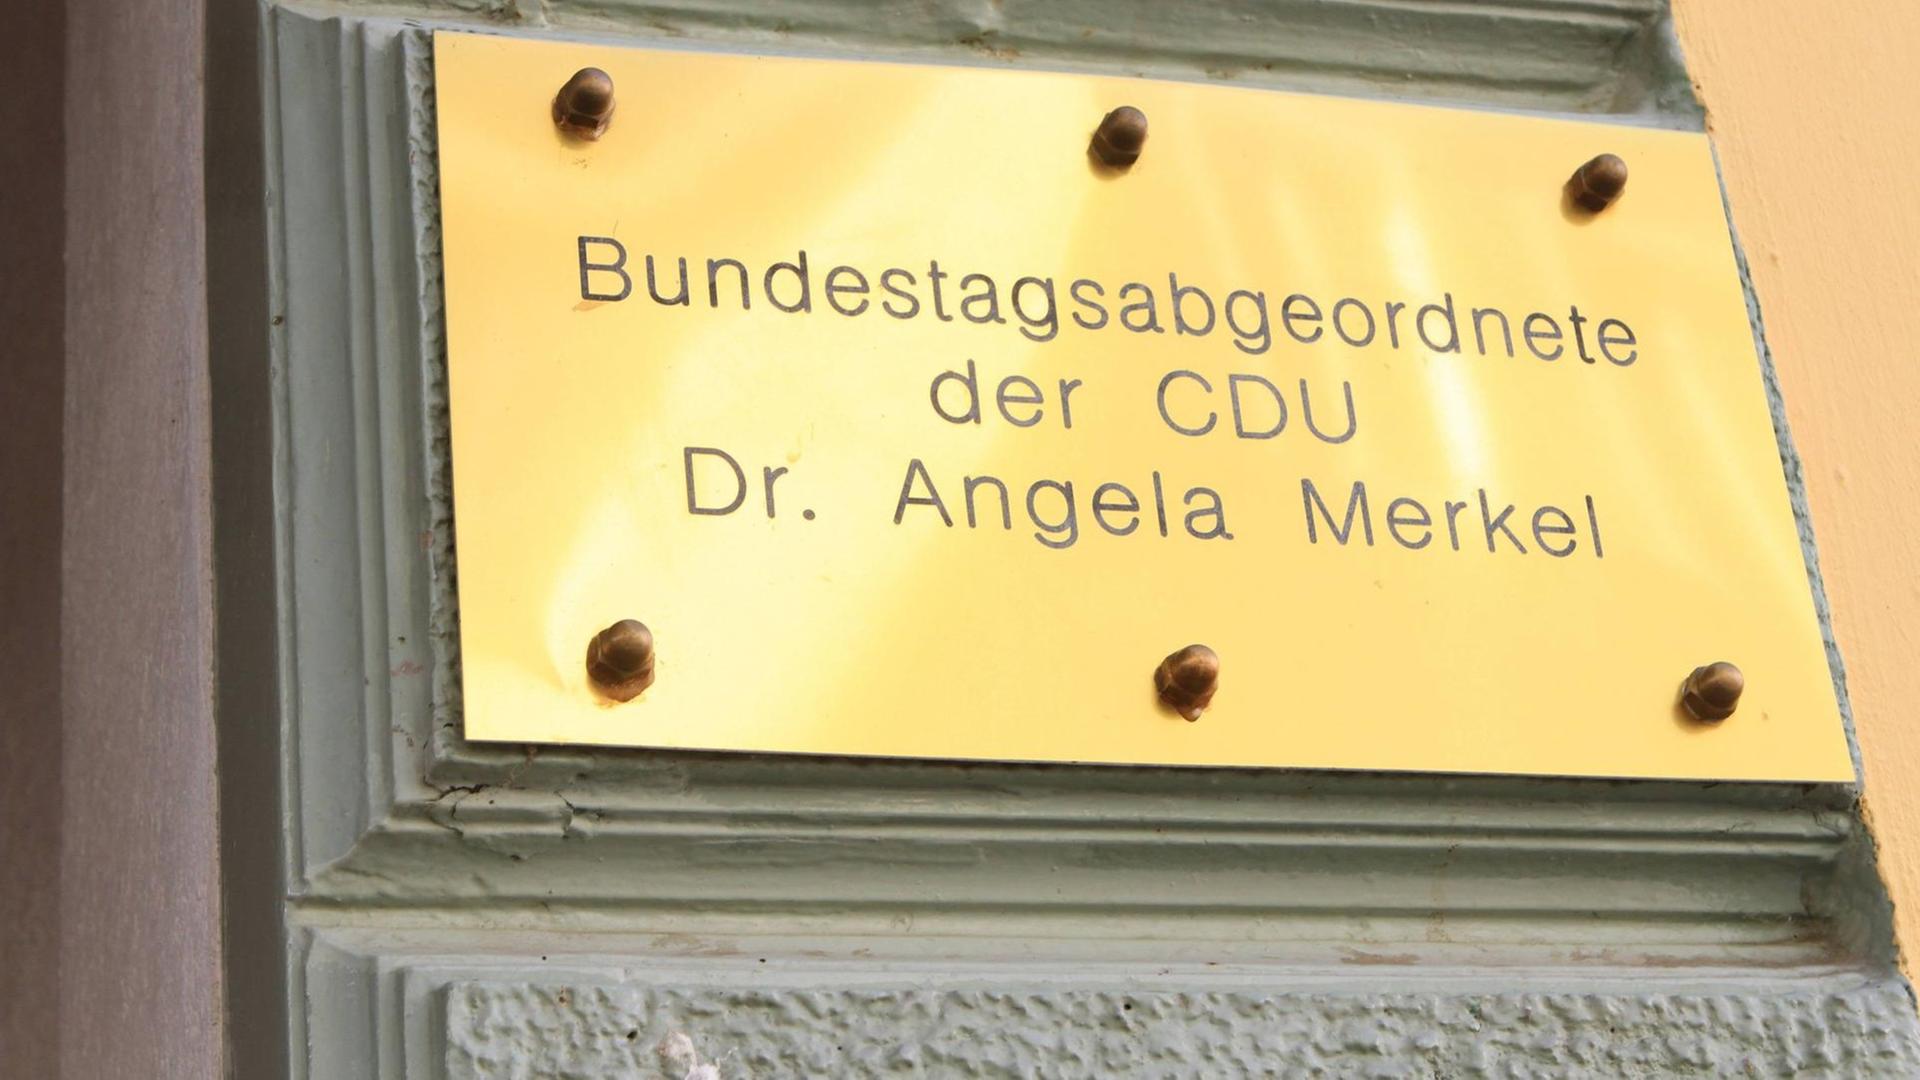 Schild mit der Aufschrift "Bundestagsabgeordnete der CDU Dr. Angela Merkel"